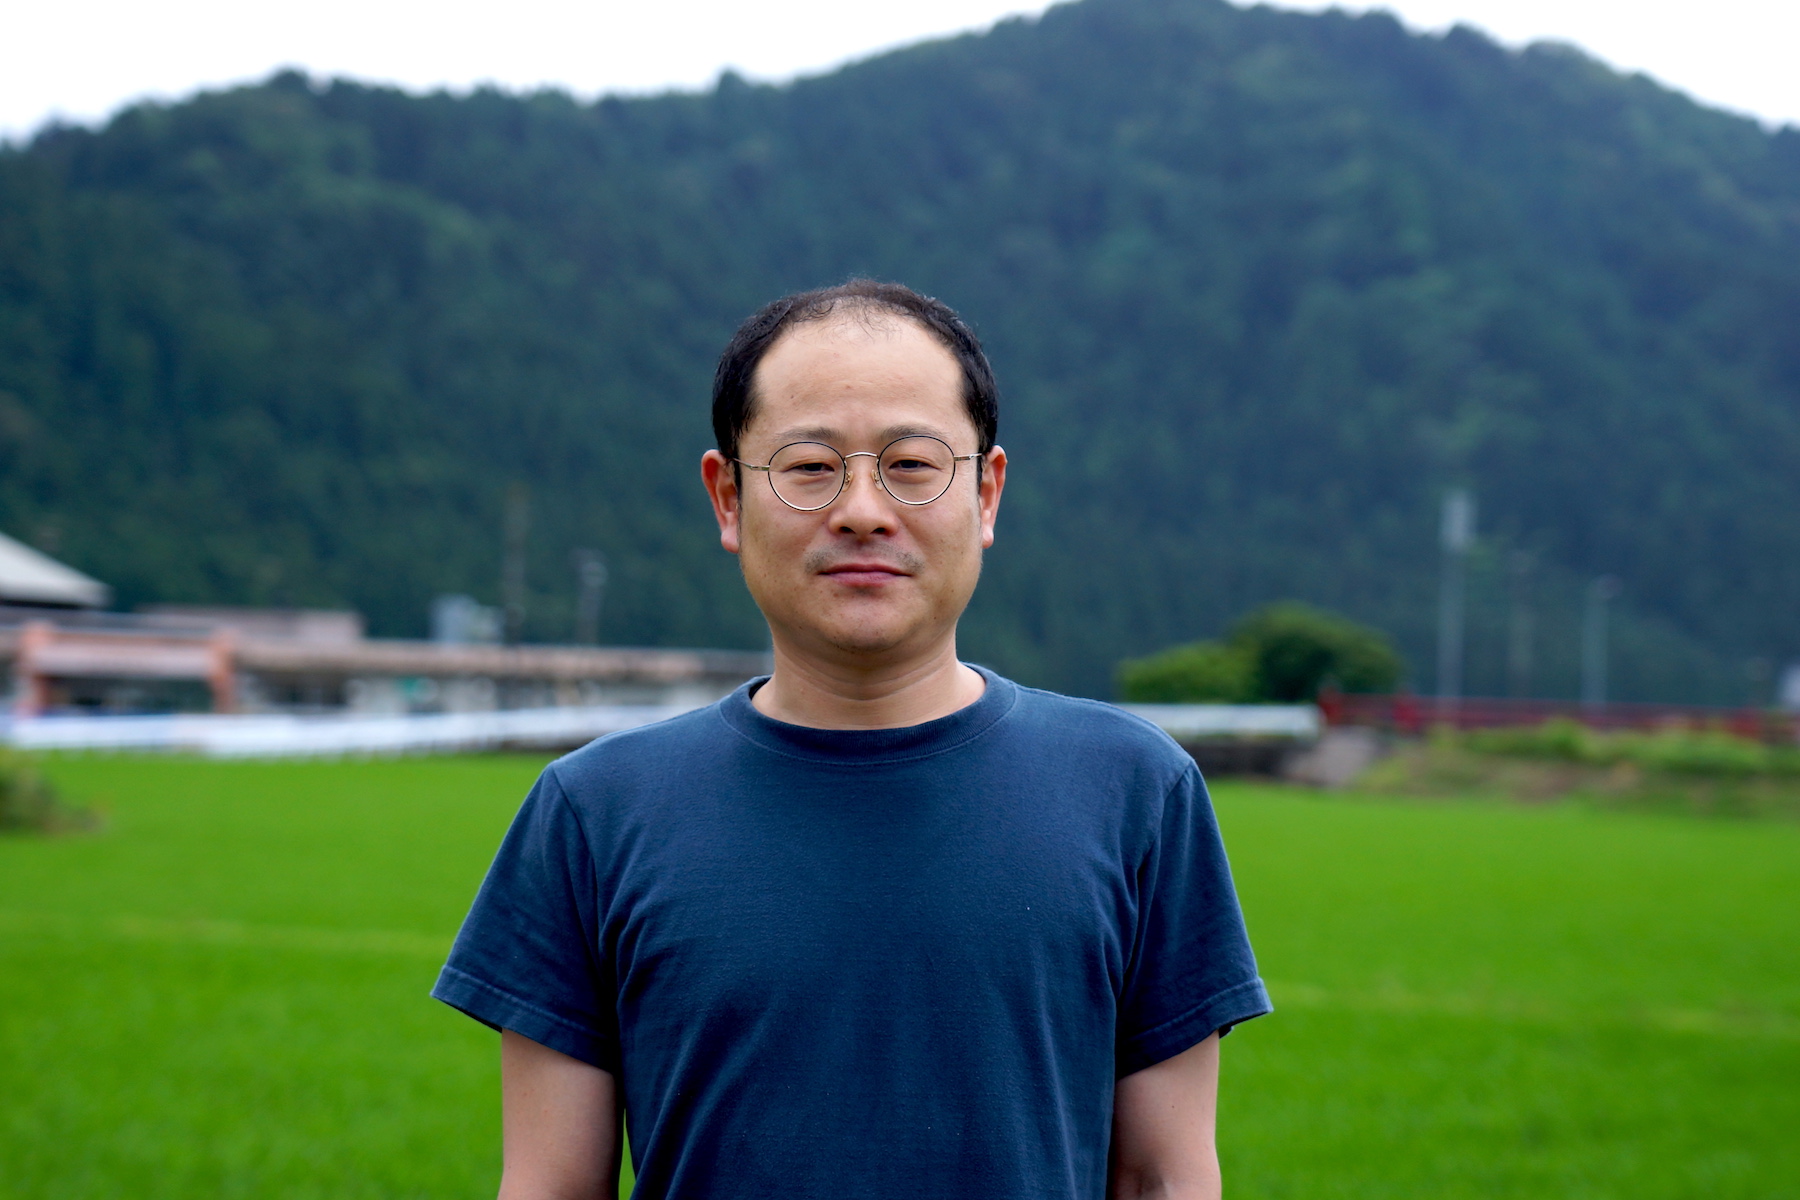 中野 喜之（Yoshiyuki Nakano）氏 「株式会社中野」代表 / 1978年生まれ。1997年に福井県立武生商業高等学校を卒業後、約3年間他の漆器の工房で修行。その後、「株式会社中野」に入社。